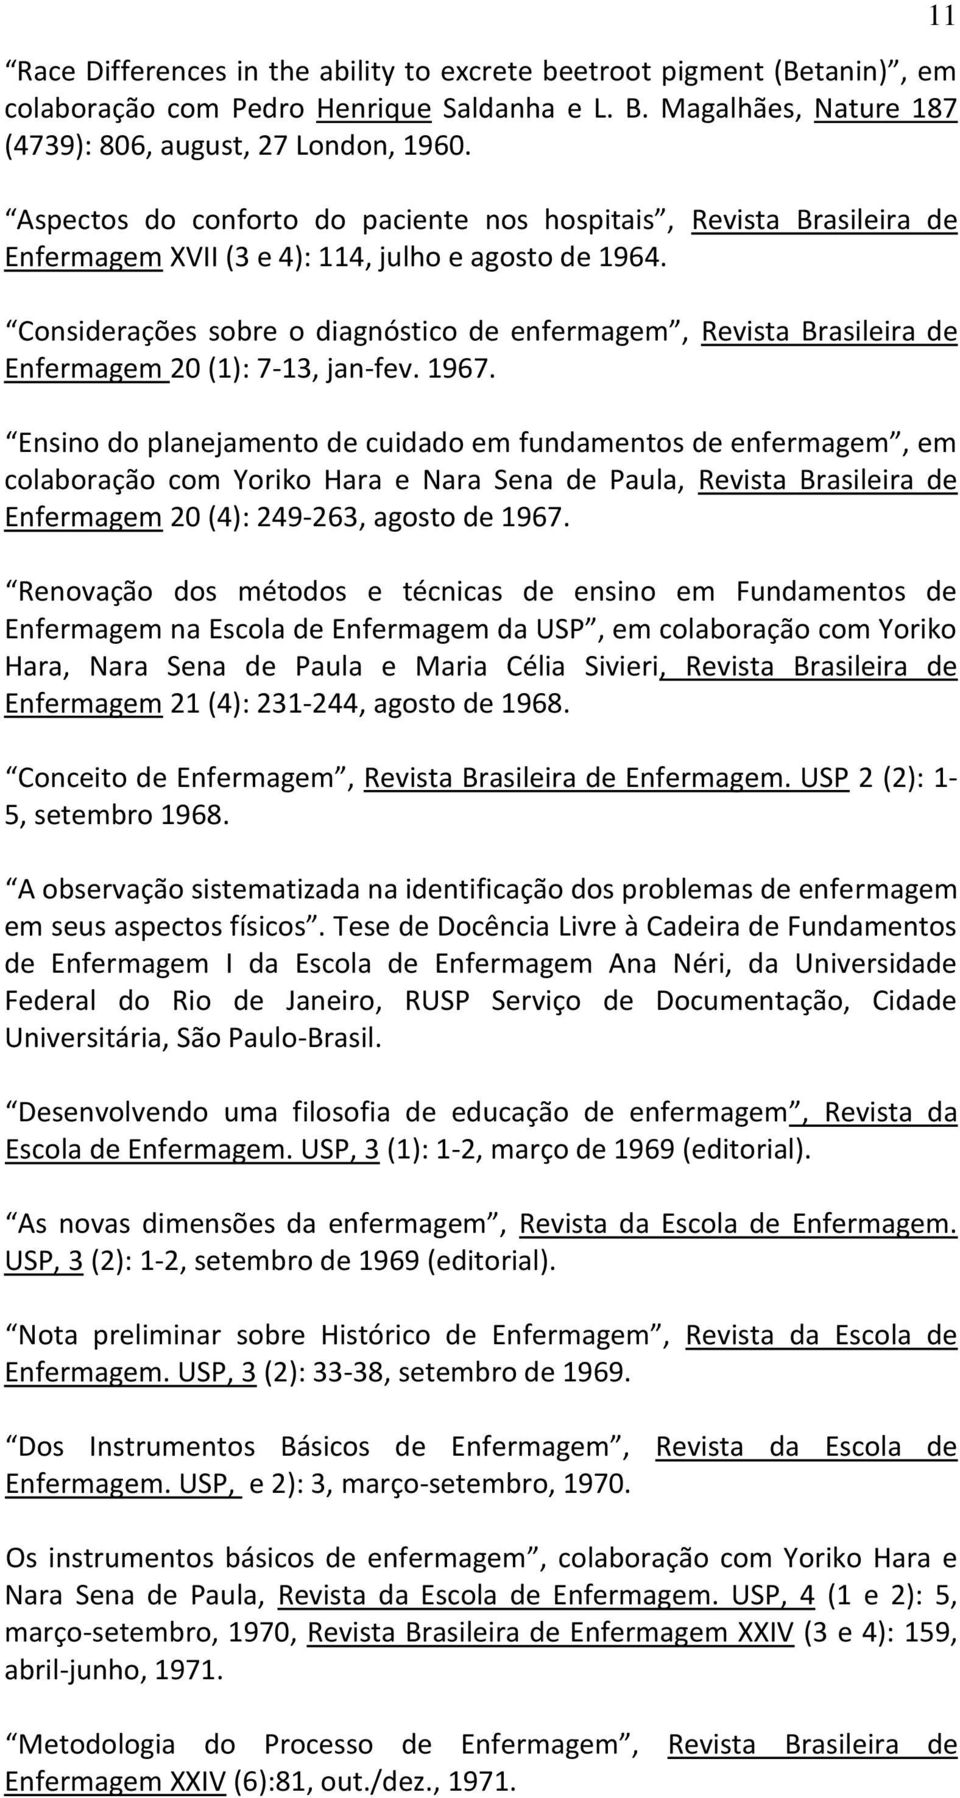 Considerações sobre o diagnóstico de enfermagem, Revista Brasileira de Enfermagem 20 (1): 7-13, jan-fev. 1967.